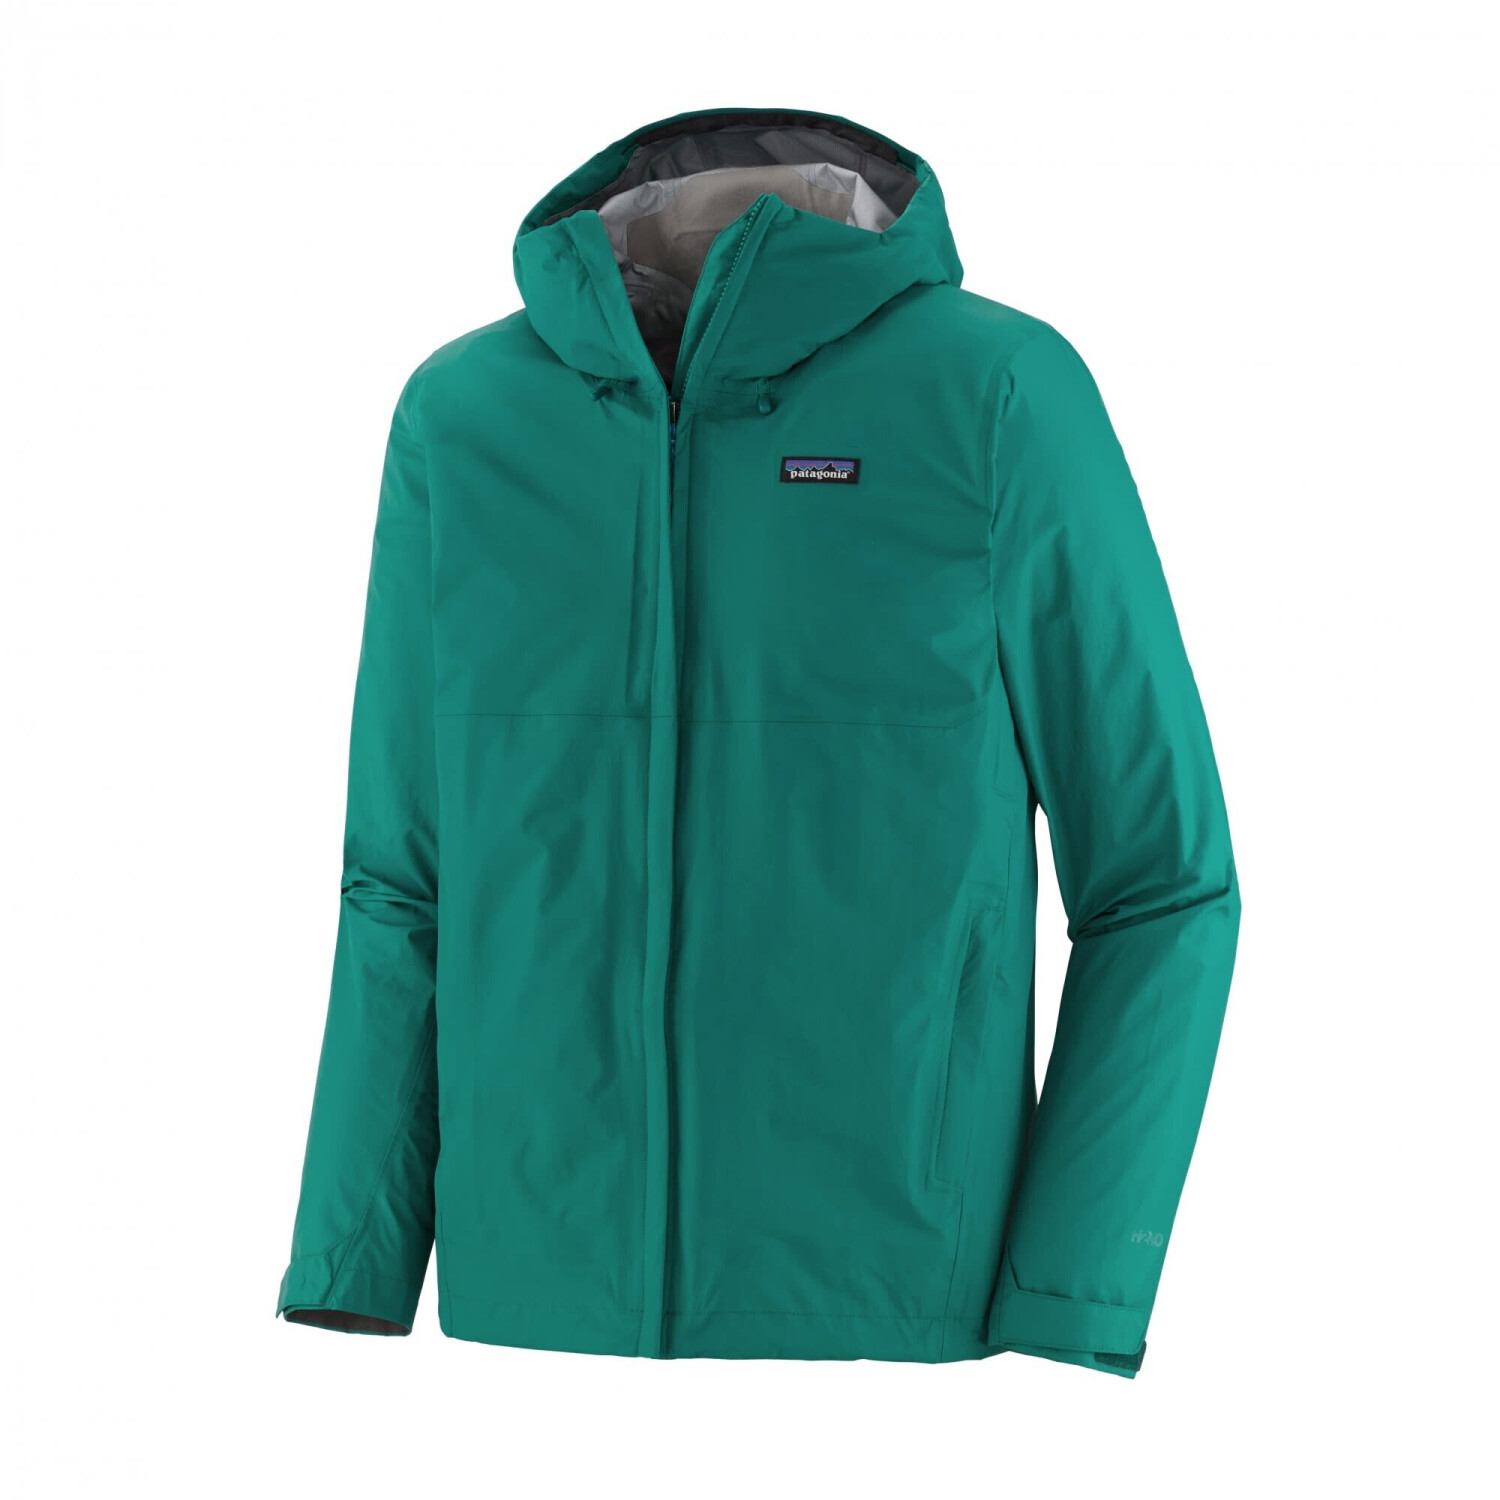 Patagonia Men's Torrentshell 3L Jacket borealis green